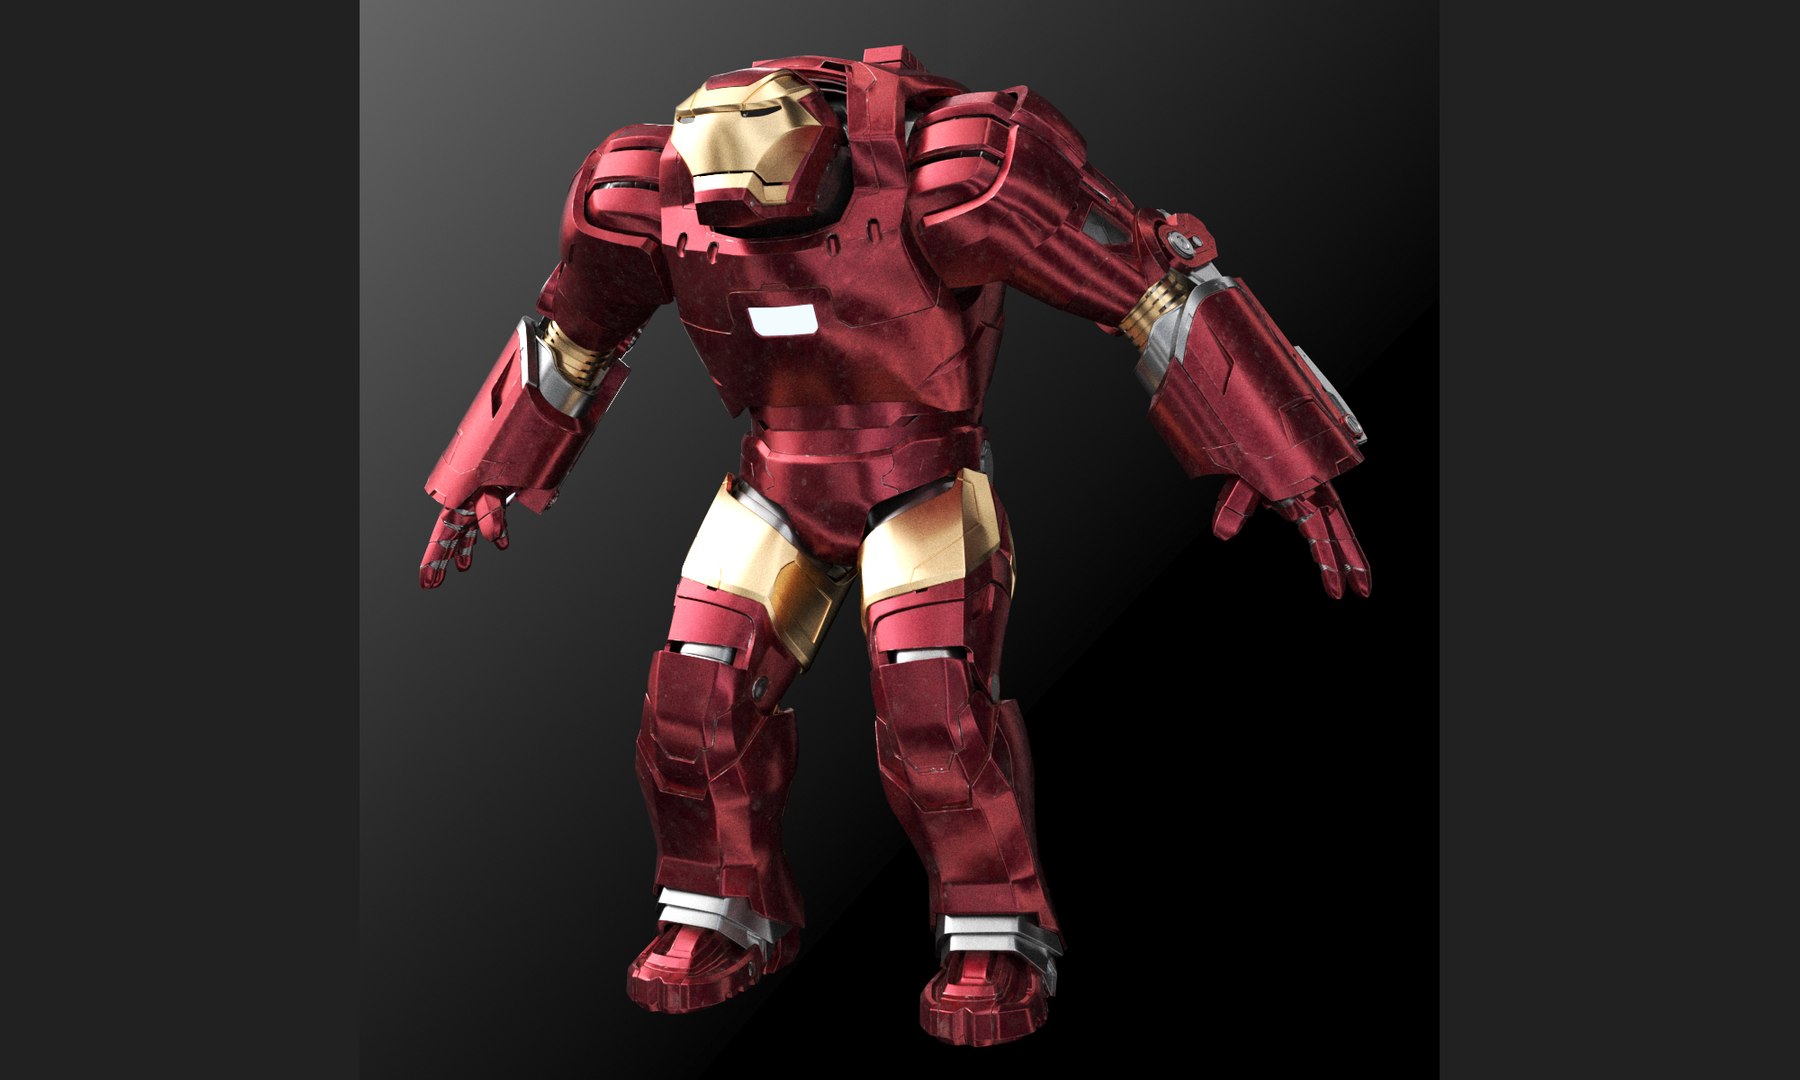 modèle 3D de Pack Iron Man 01 4 en 1 - TurboSquid 1943280